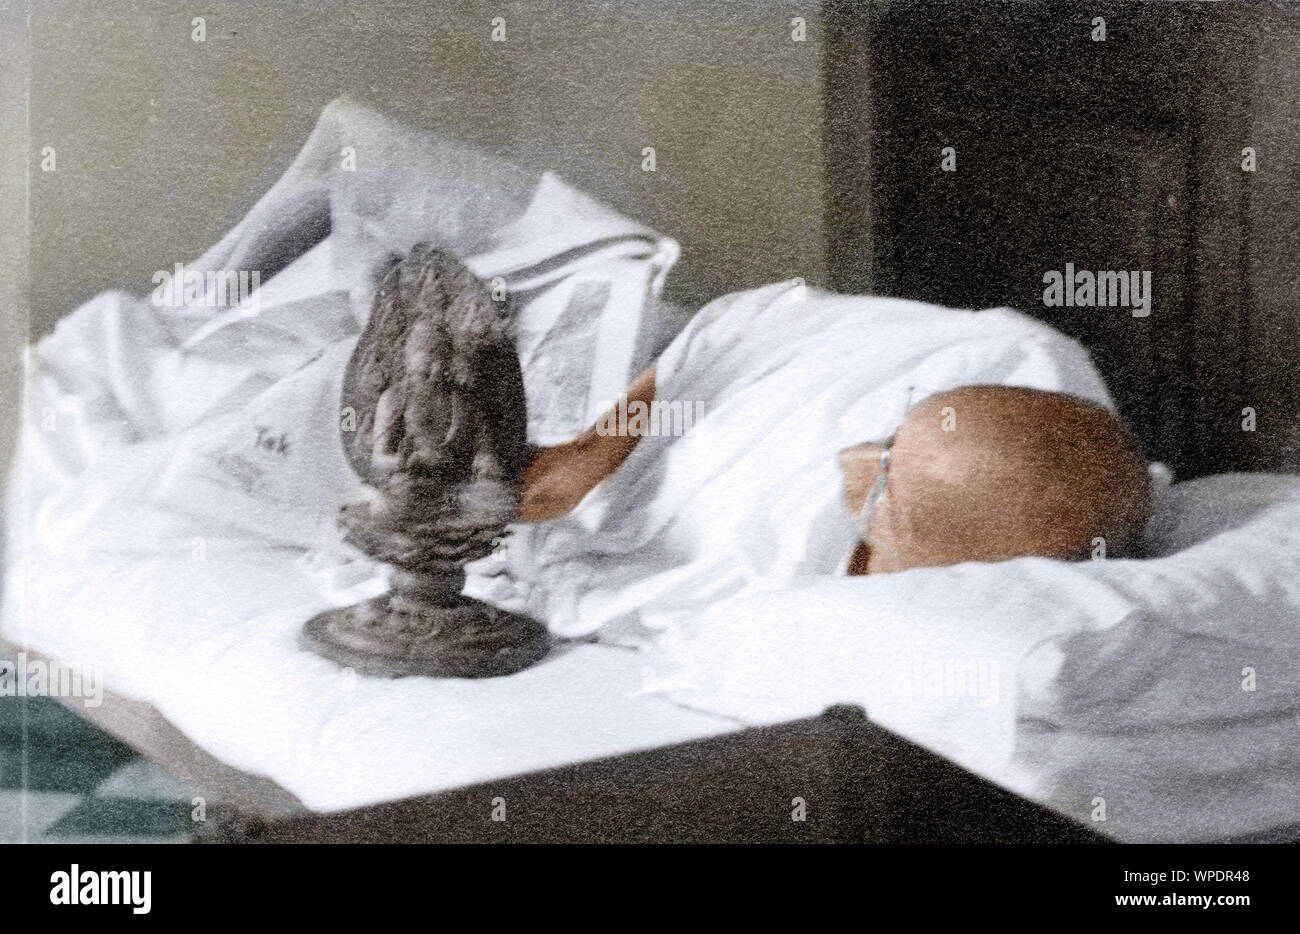 Mahatma Gandhi Schlafen neben einem Idol von Buddha, Indien, Asien, 1946 Stockfoto